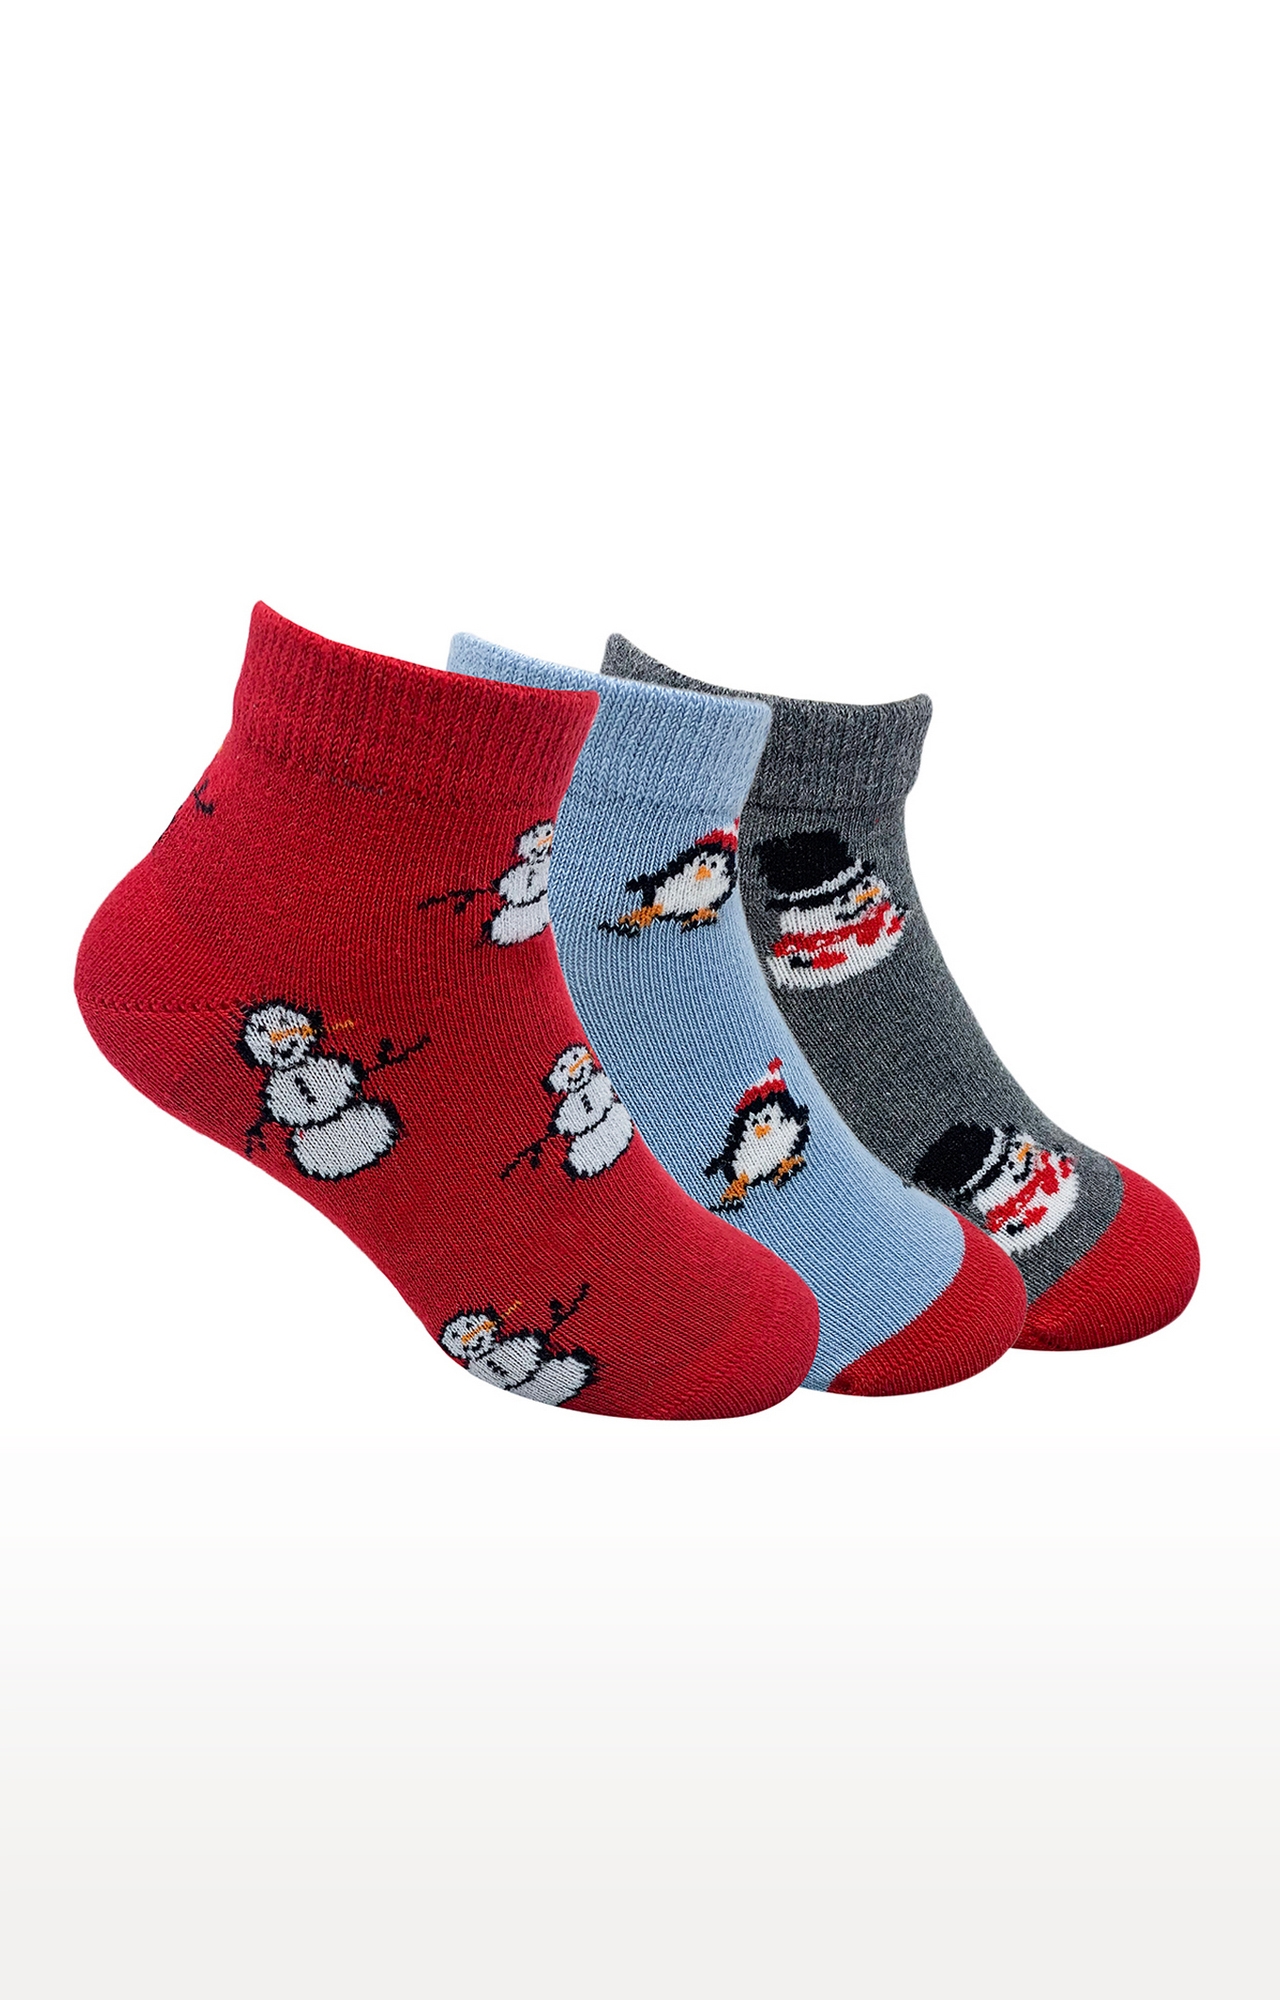 Mint & Oak | Mint & Oak Christmas Spirit Cotton Multi Ankle Length Socks for Kids - Pack of 3